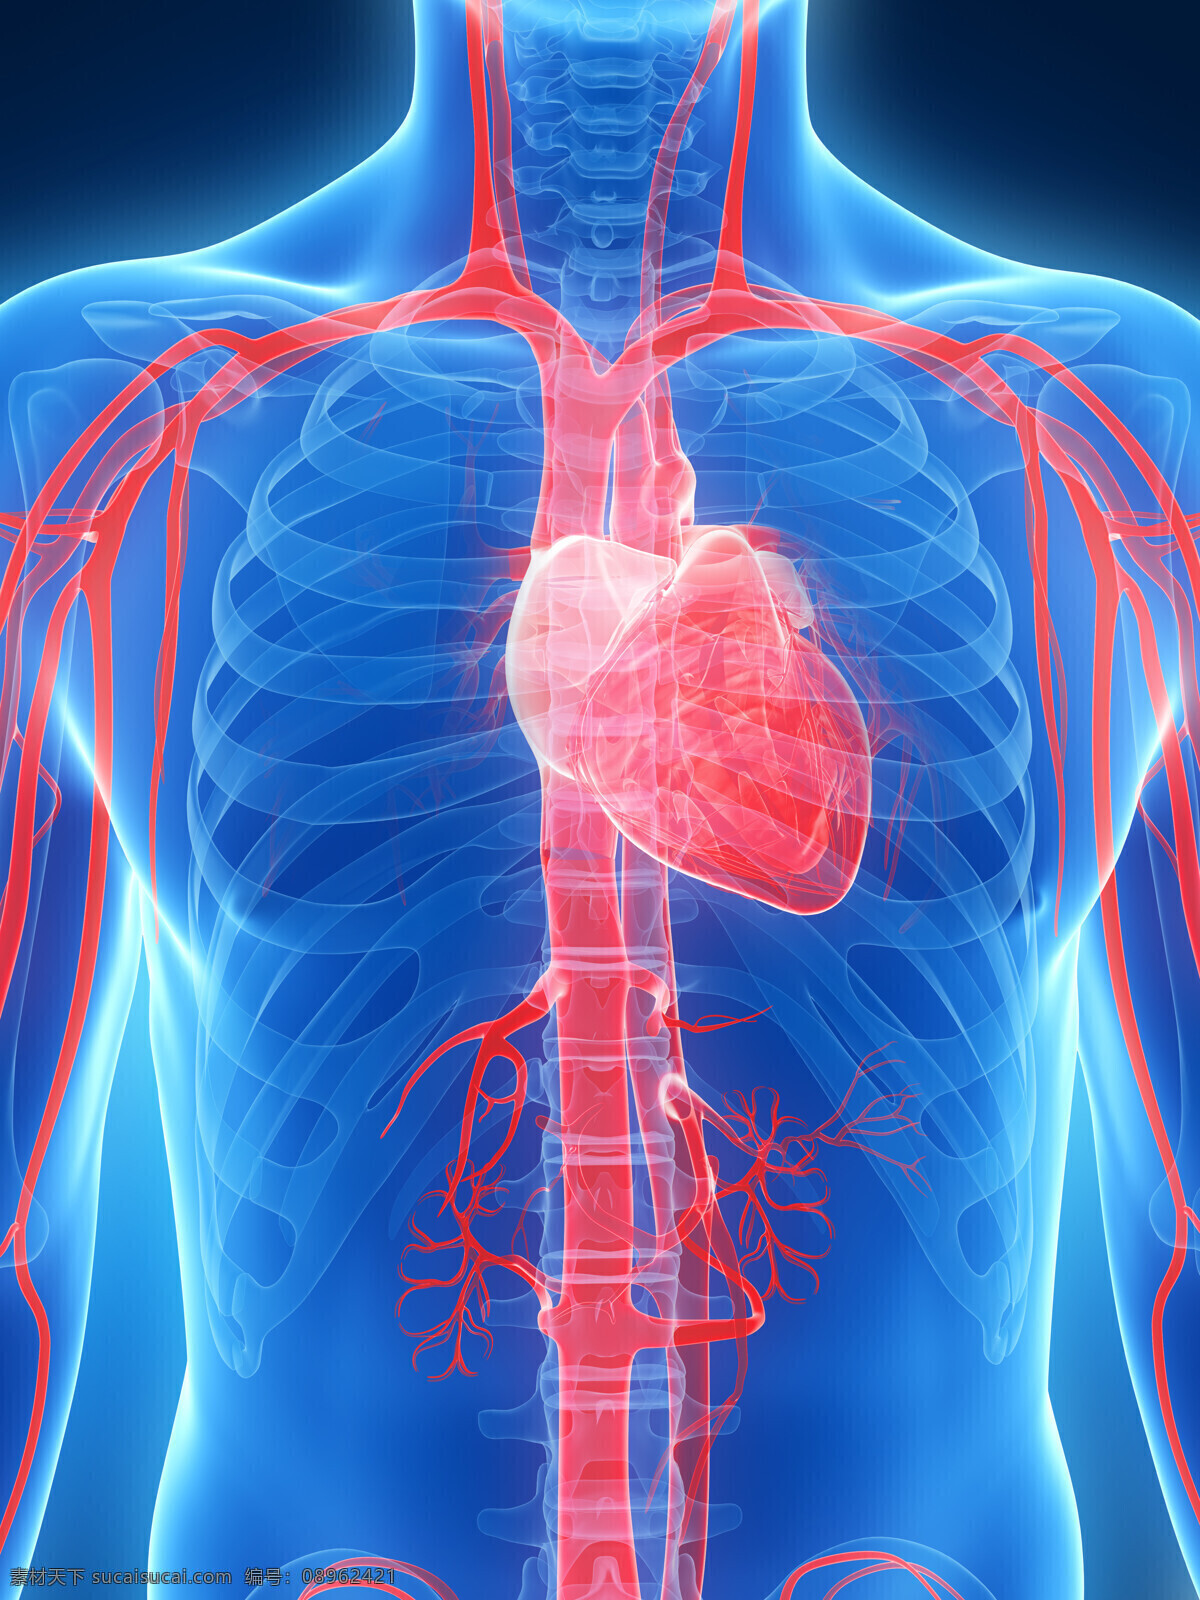 心脏 动脉 骨骼 器官 动脉器官 心脏器官 人体器官 医疗科学 医学 医疗护理 现代科技